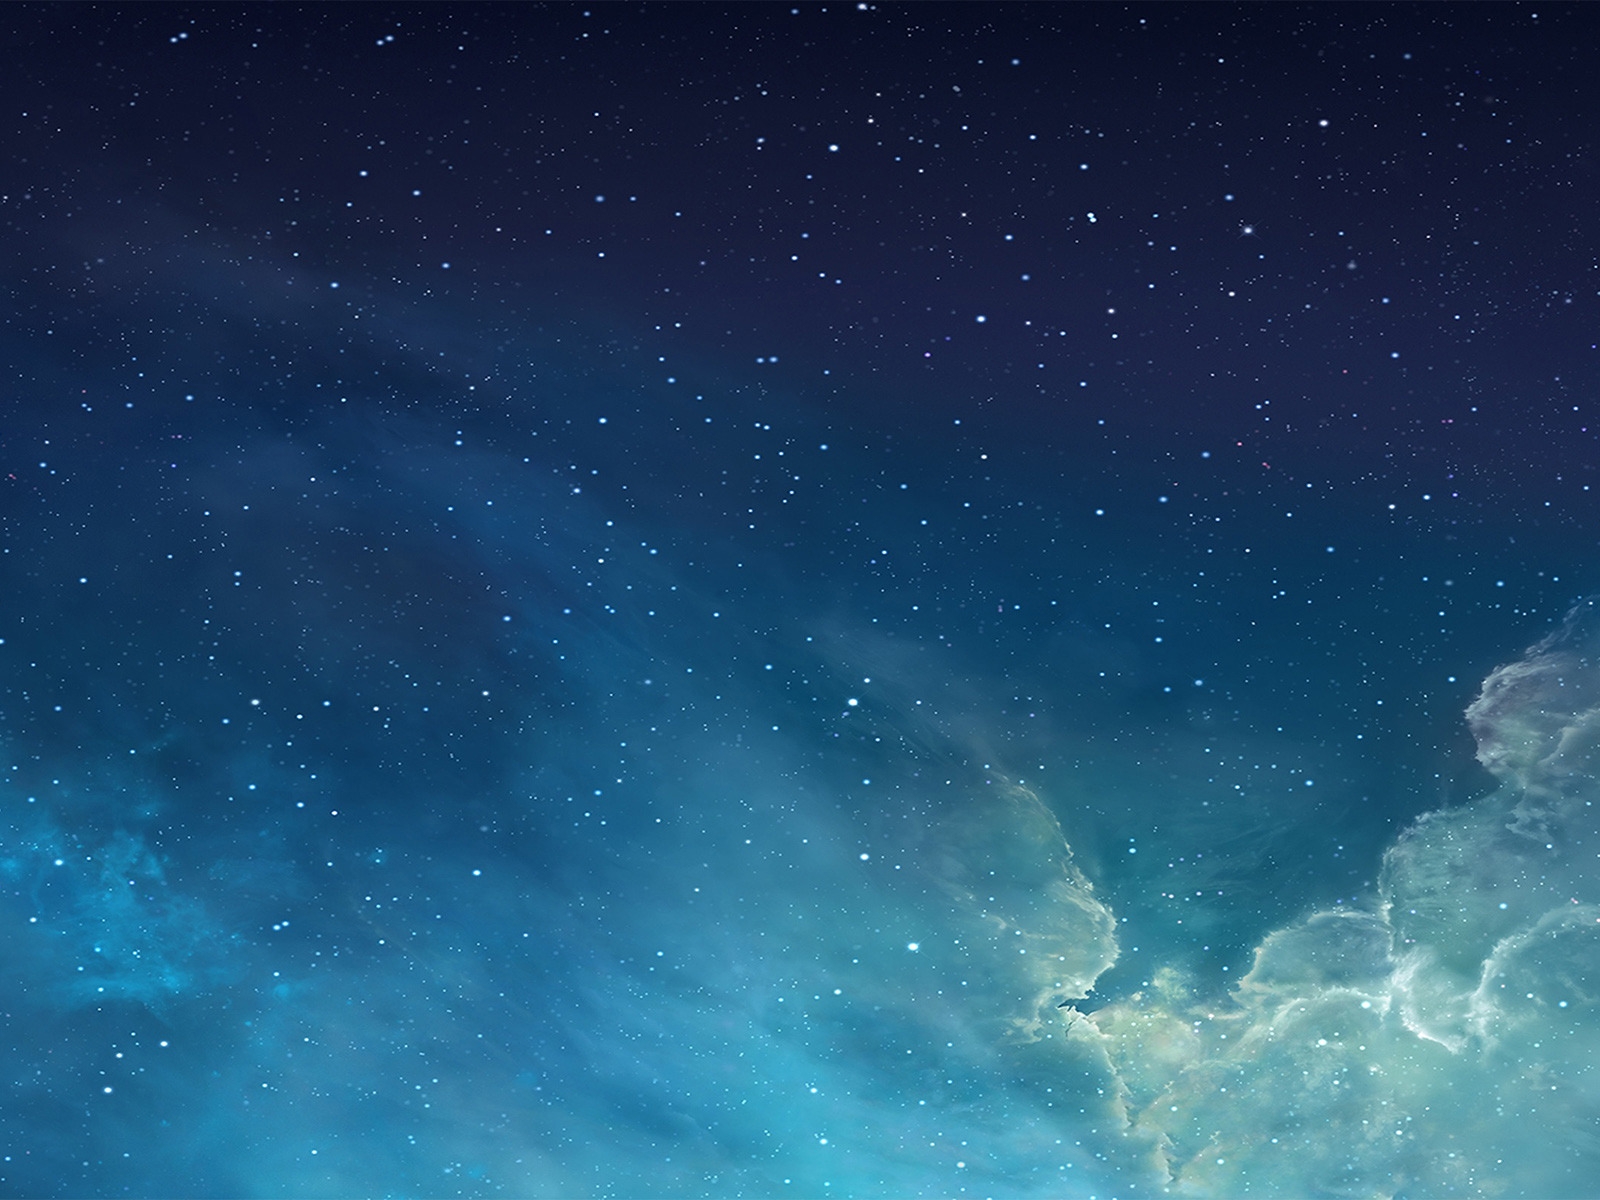 iOS 7 Galaxy for 1600 x 1200 resolution